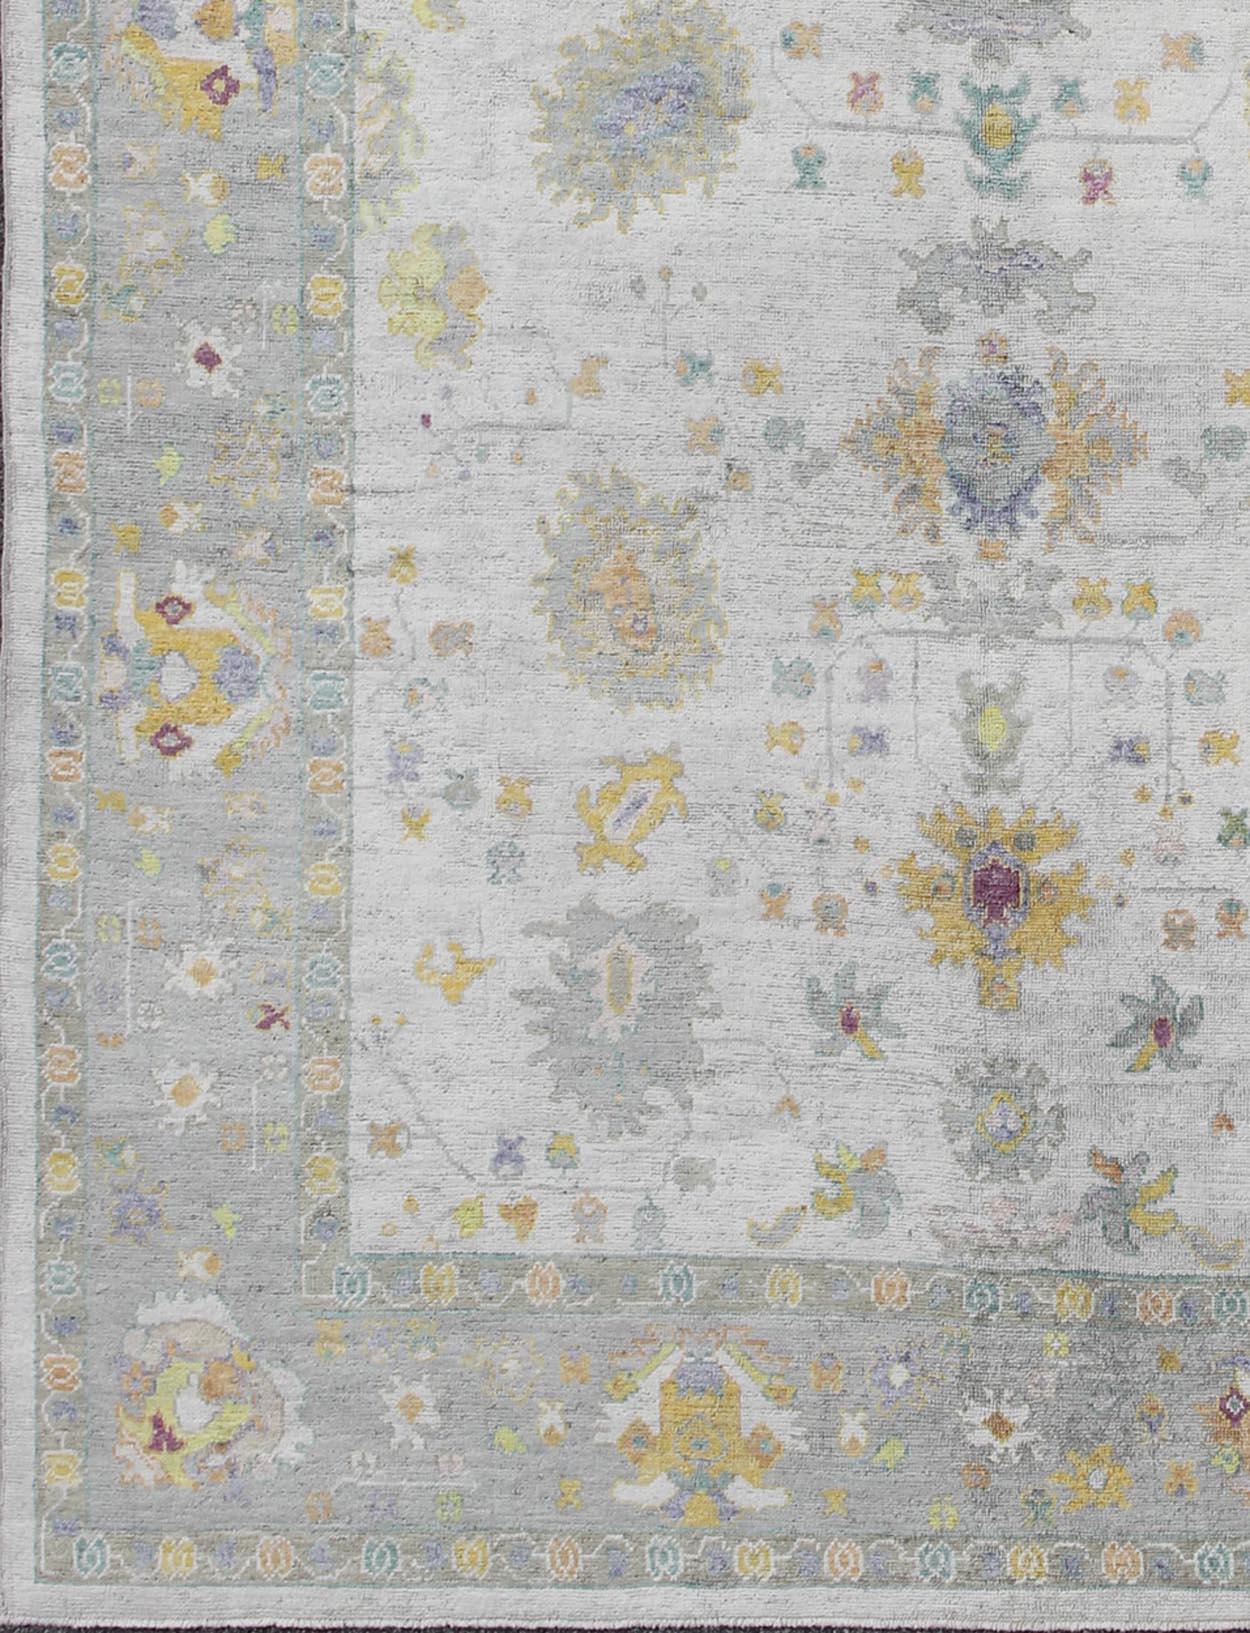 Großer türkischer Oushak-Teppich mit neutraler Farbpalette und Allover-Blumenmuster. Keivan Woven Arts / Teppich EN-165632, Herkunftsland / Art: Türkei / Oushak. 

Maße: 10'2 x 14'.

Dieser Oushak-Teppich mit klassischem Design aus der Türkei